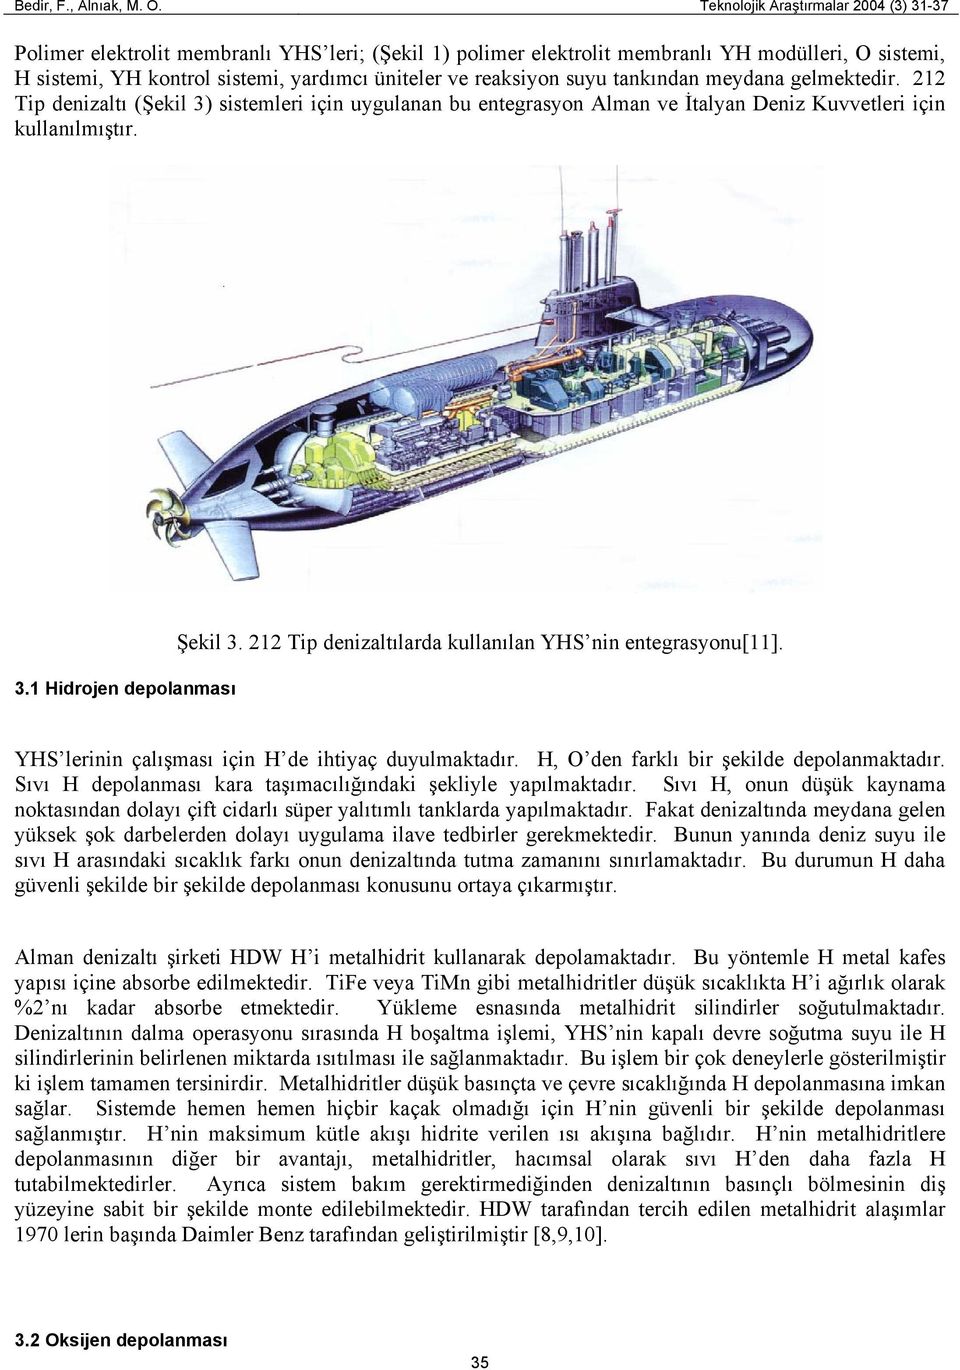 reaksiyon suyu tankından meydana gelmektedir. 212 Tip denizaltı (Şekil 3) sistemleri için uygulanan bu entegrasyon Alman ve İtalyan Deniz Kuvvetleri için kullanılmıştır. 3.1 Hidrojen depolanması Şekil 3.